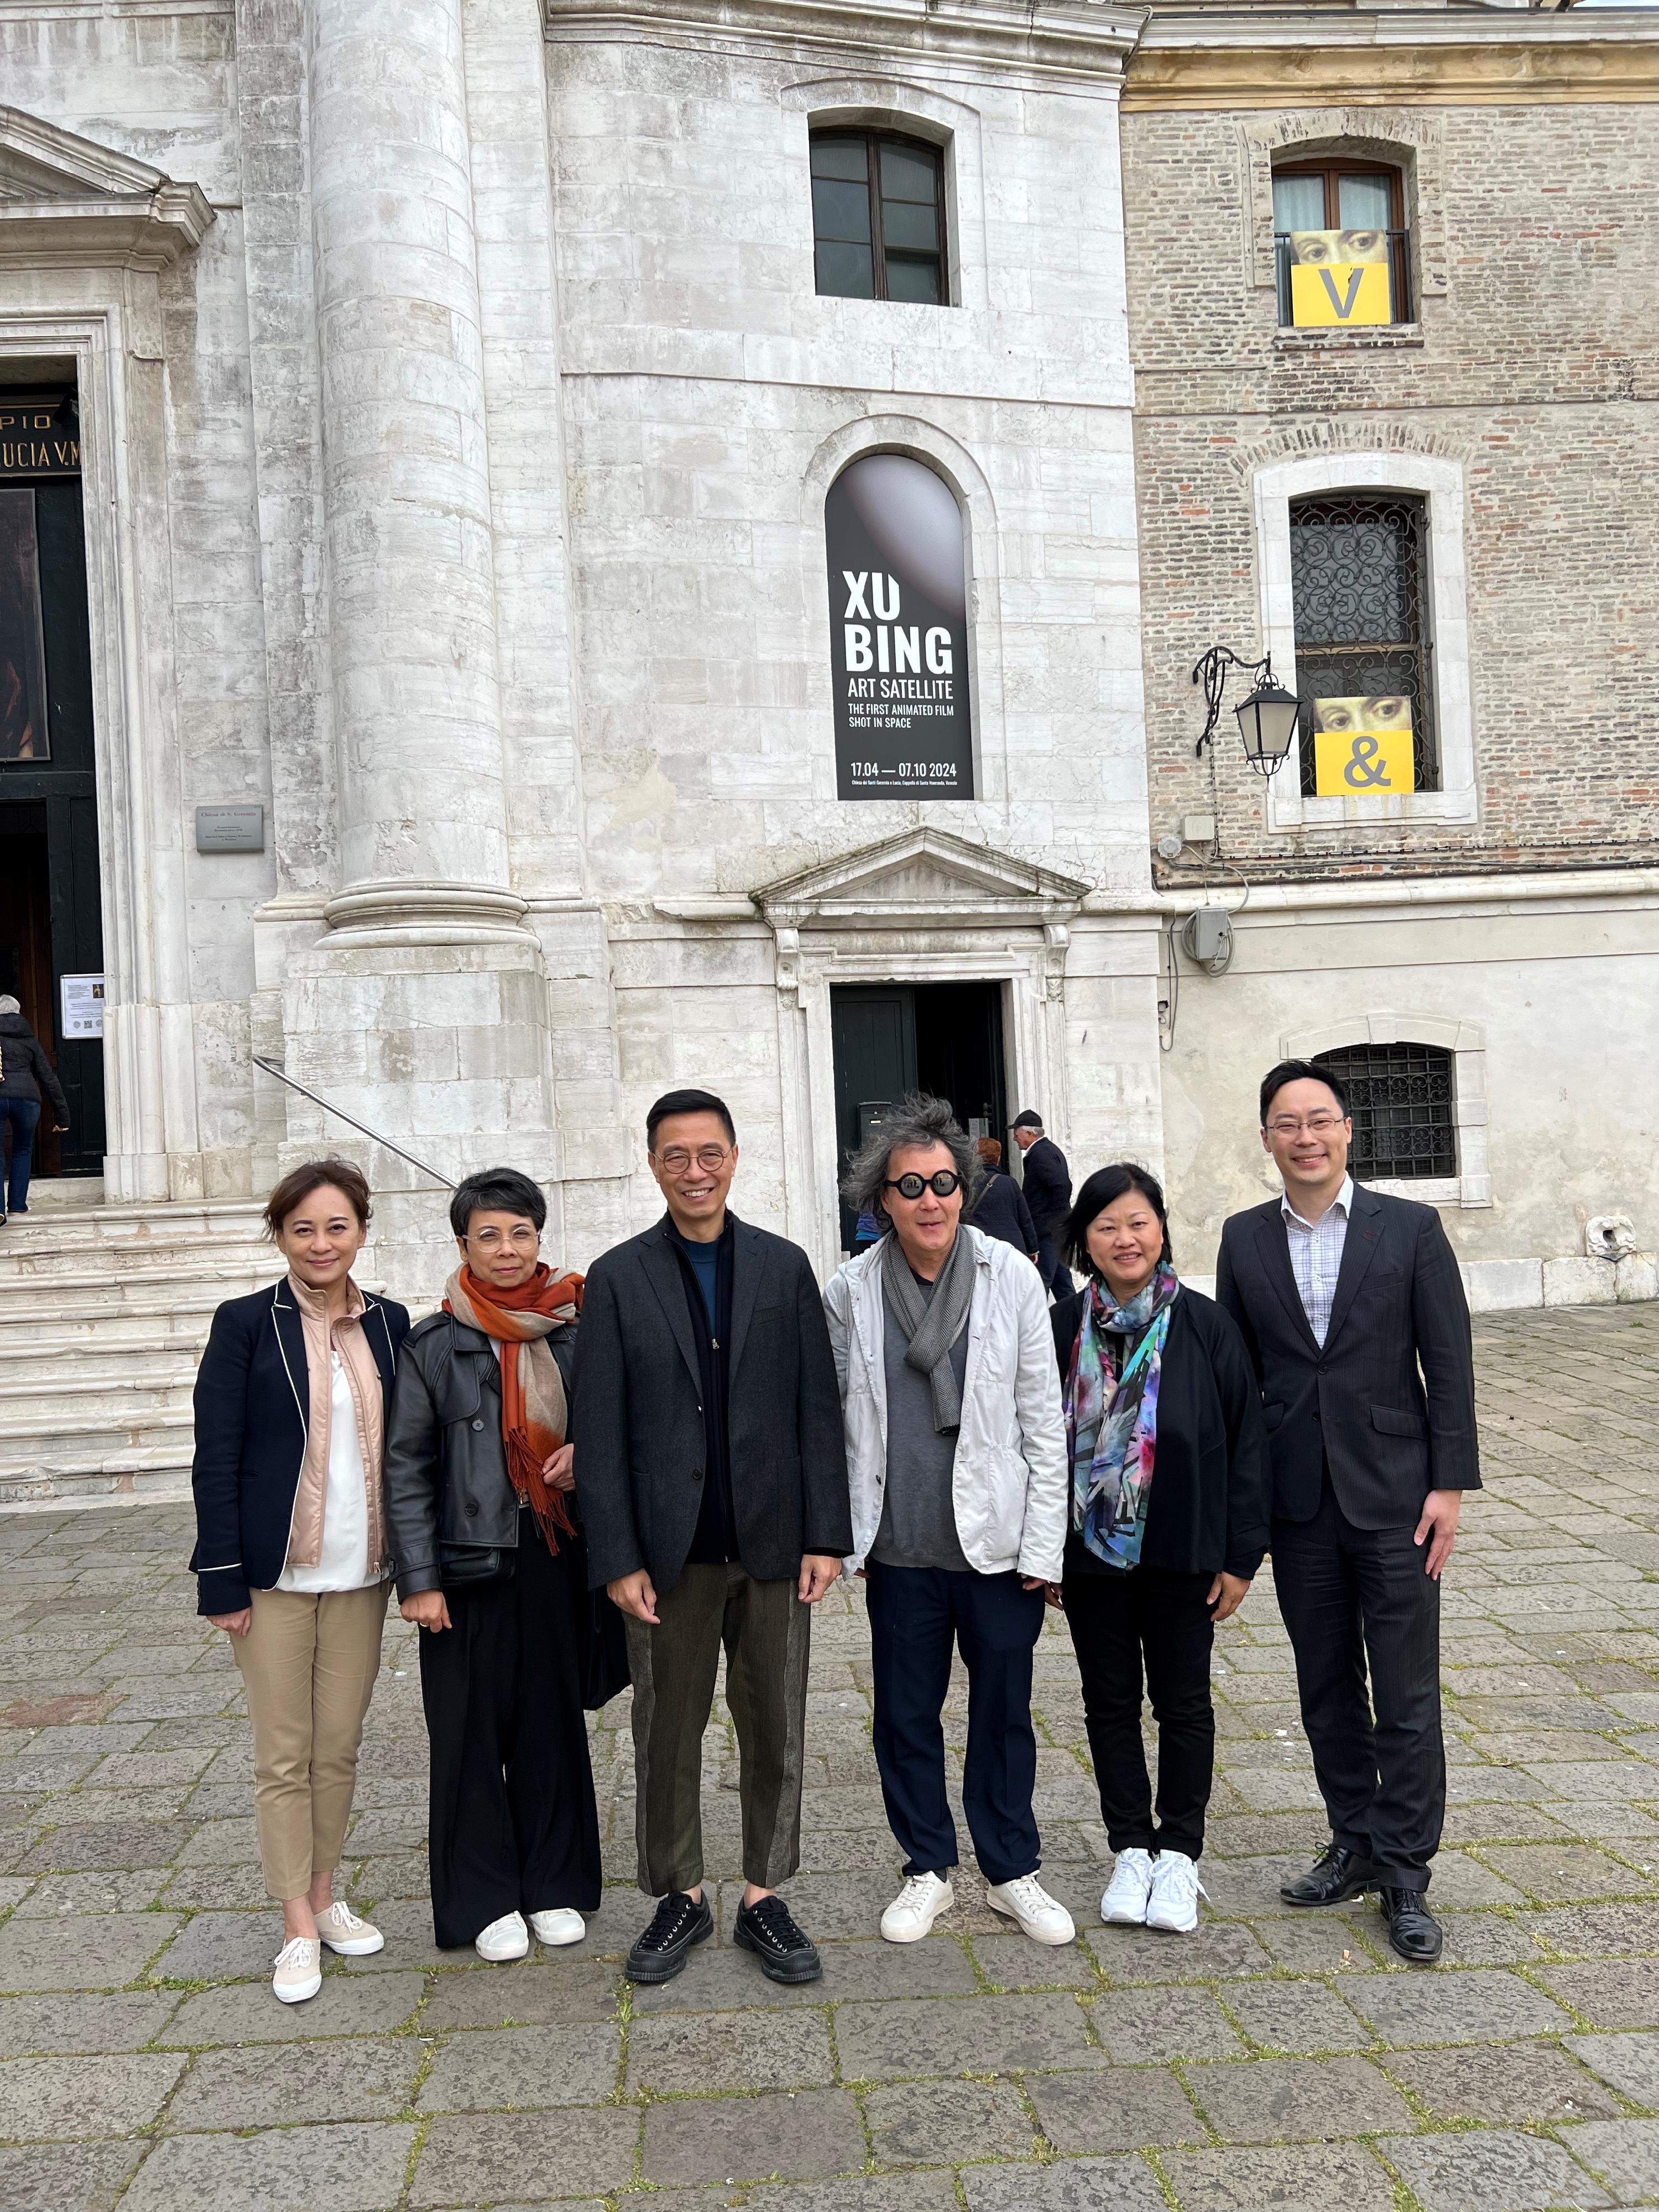 文化体育及旅游局（文体旅局）局长杨润雄（左三）今日（威尼斯时间四月二十日）在意大利威尼斯视艺双年展，参观获文体旅局委任为「文化推广大使」的徐冰（右三）的艺术展览后合影。
